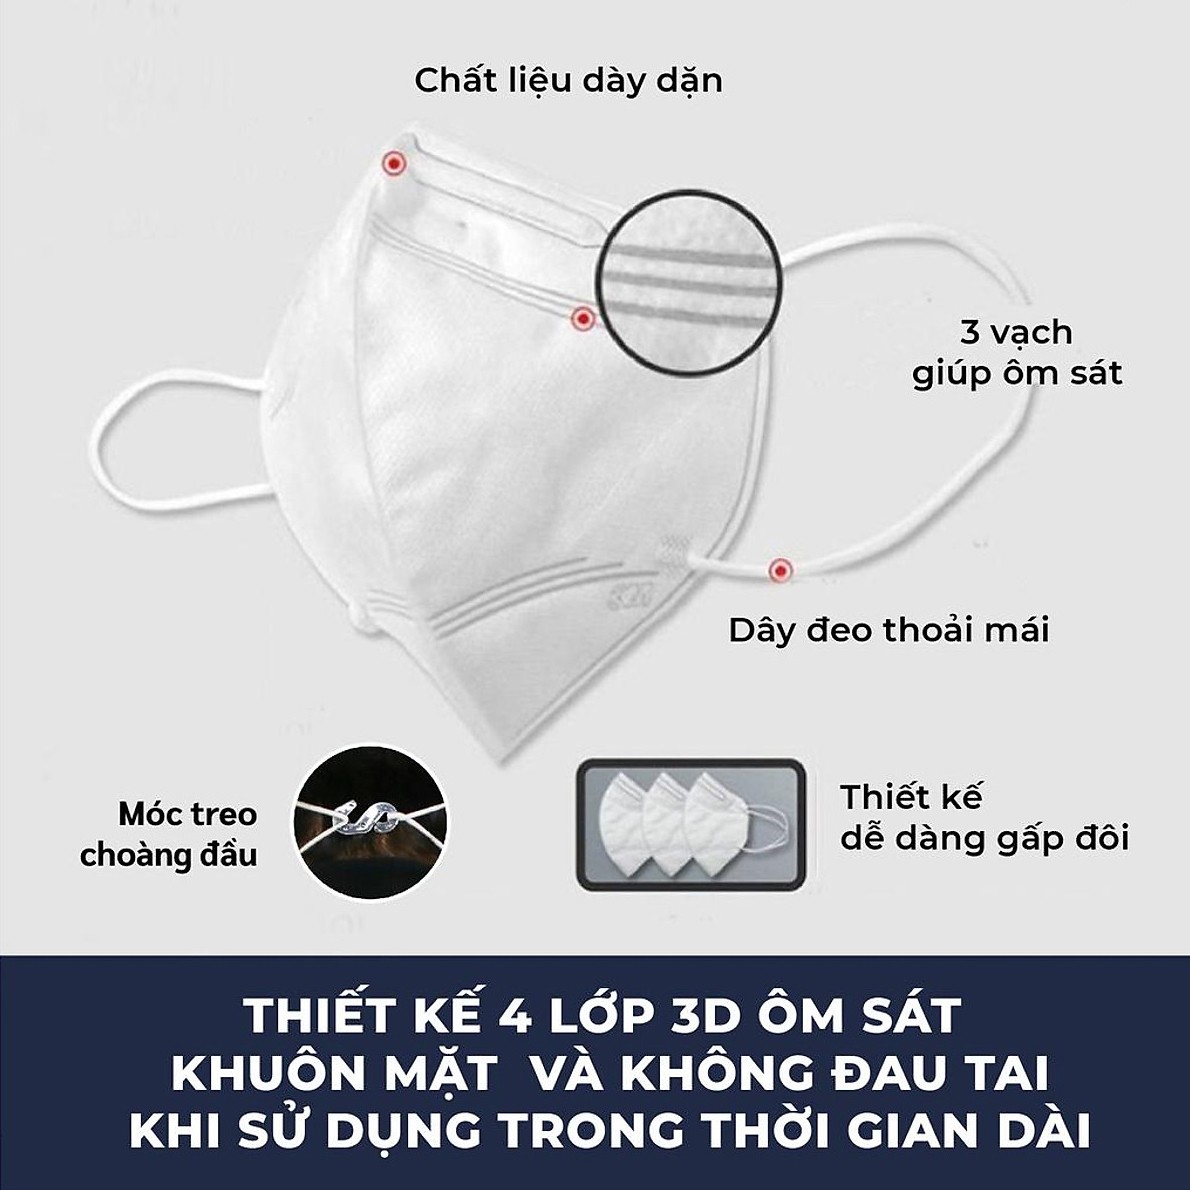 Khẩu Trang 3M KN95 9513 | 3M KF94 9013 Đạt Chuẩn FDA Lọc >95% Bụi Mịn PM2.5 Nhập Khẩu Hàn Quốc - Hàng Chính Hãng 3M - Khẩu Trang Y Tế Chuẩn 3D Mask, Thiết Kế Thoải Mái Khi Đeo